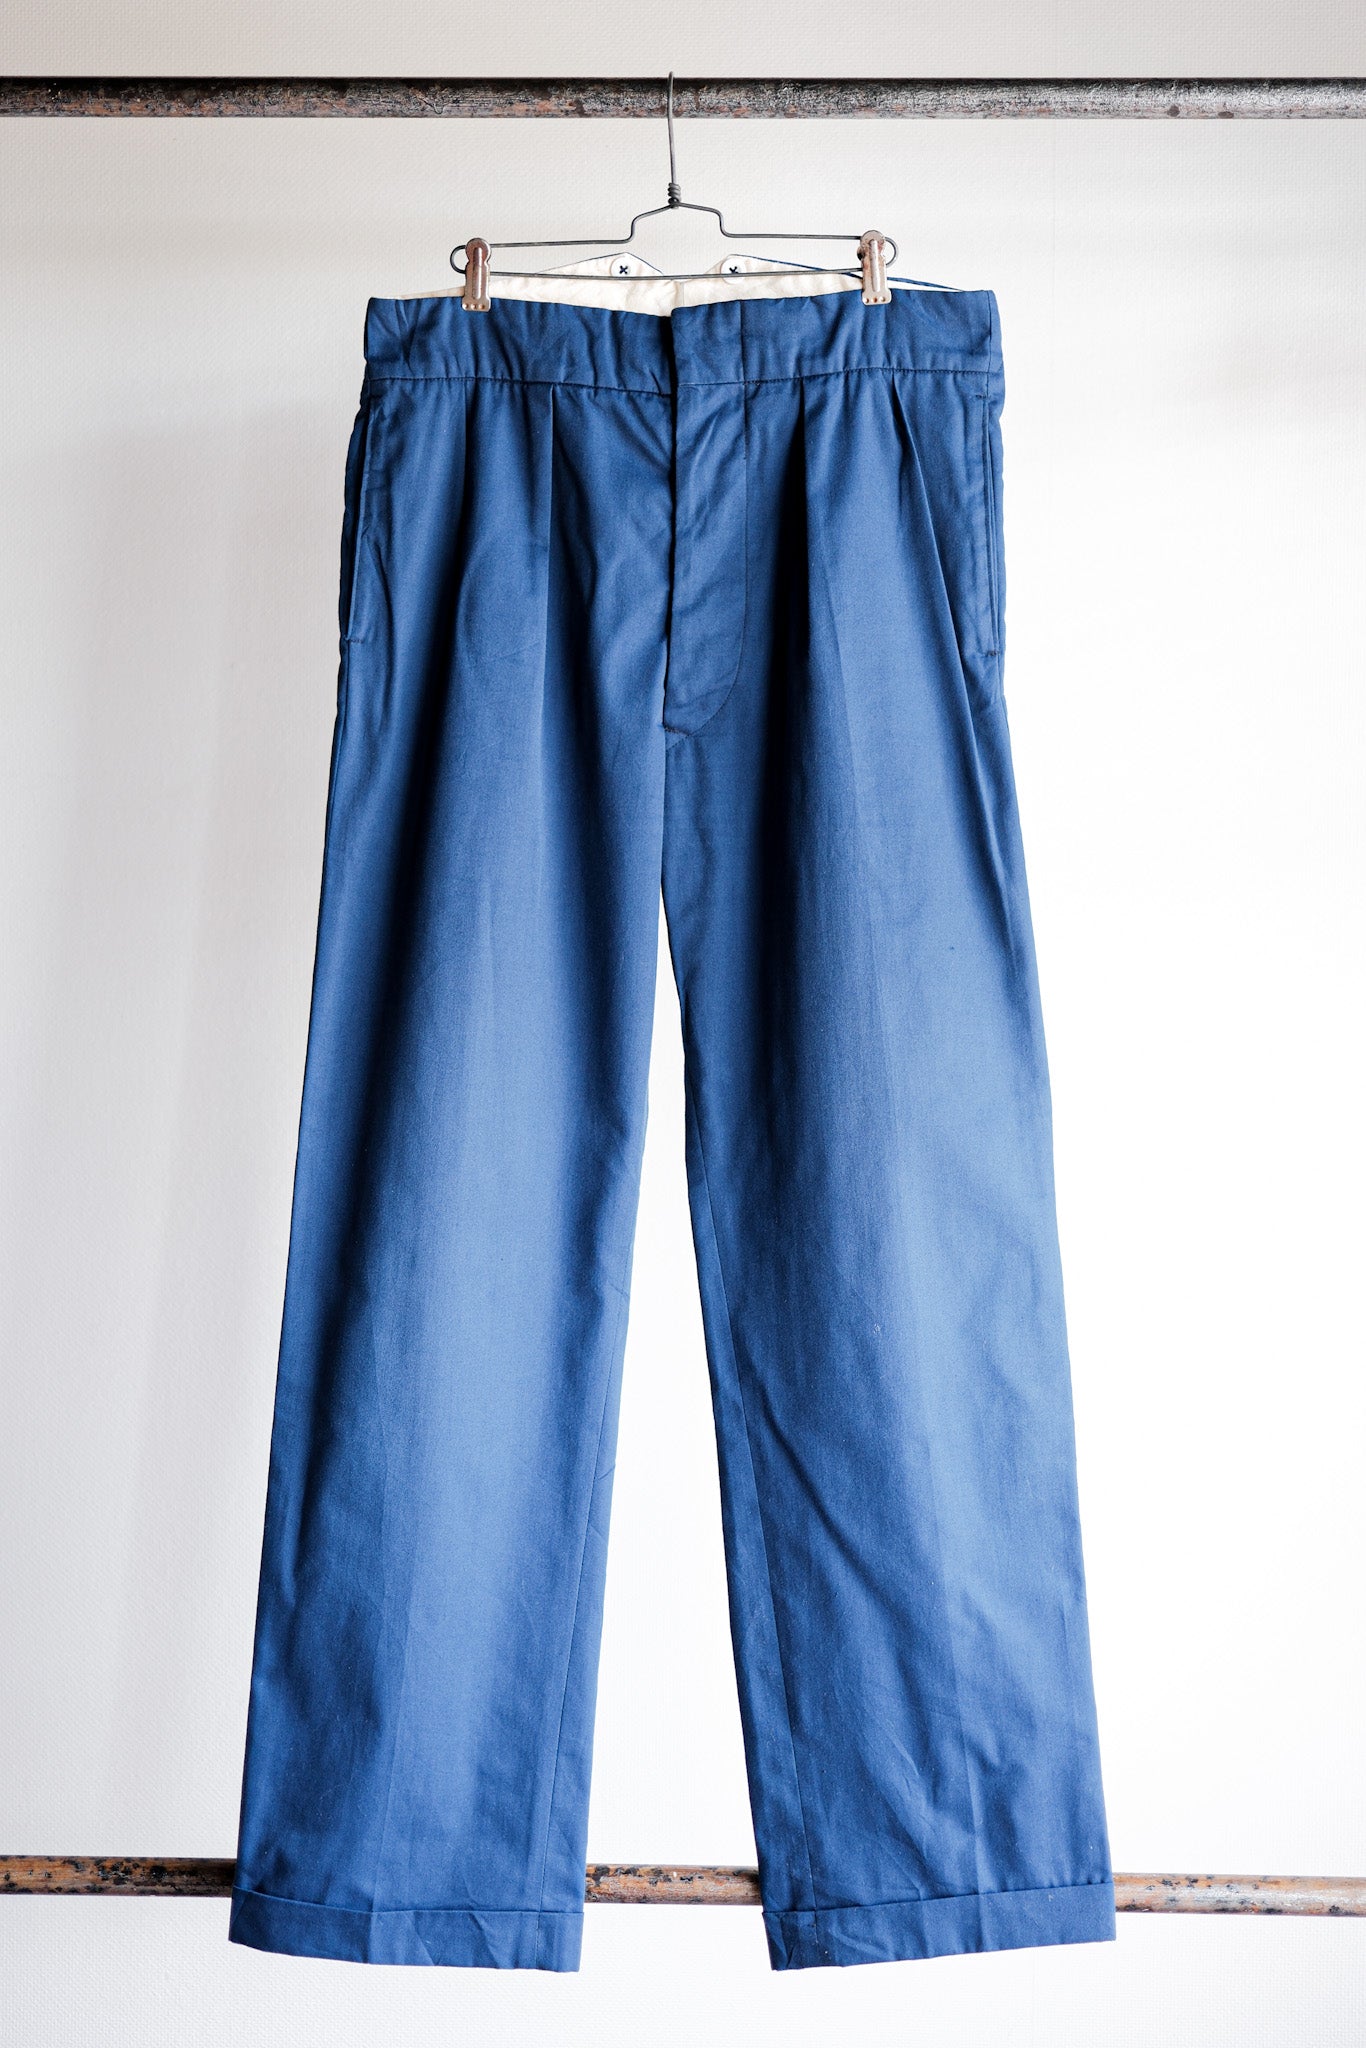 【~40's】British Vintage Blue Cotton Trousers "CC41" "Dead Stock"